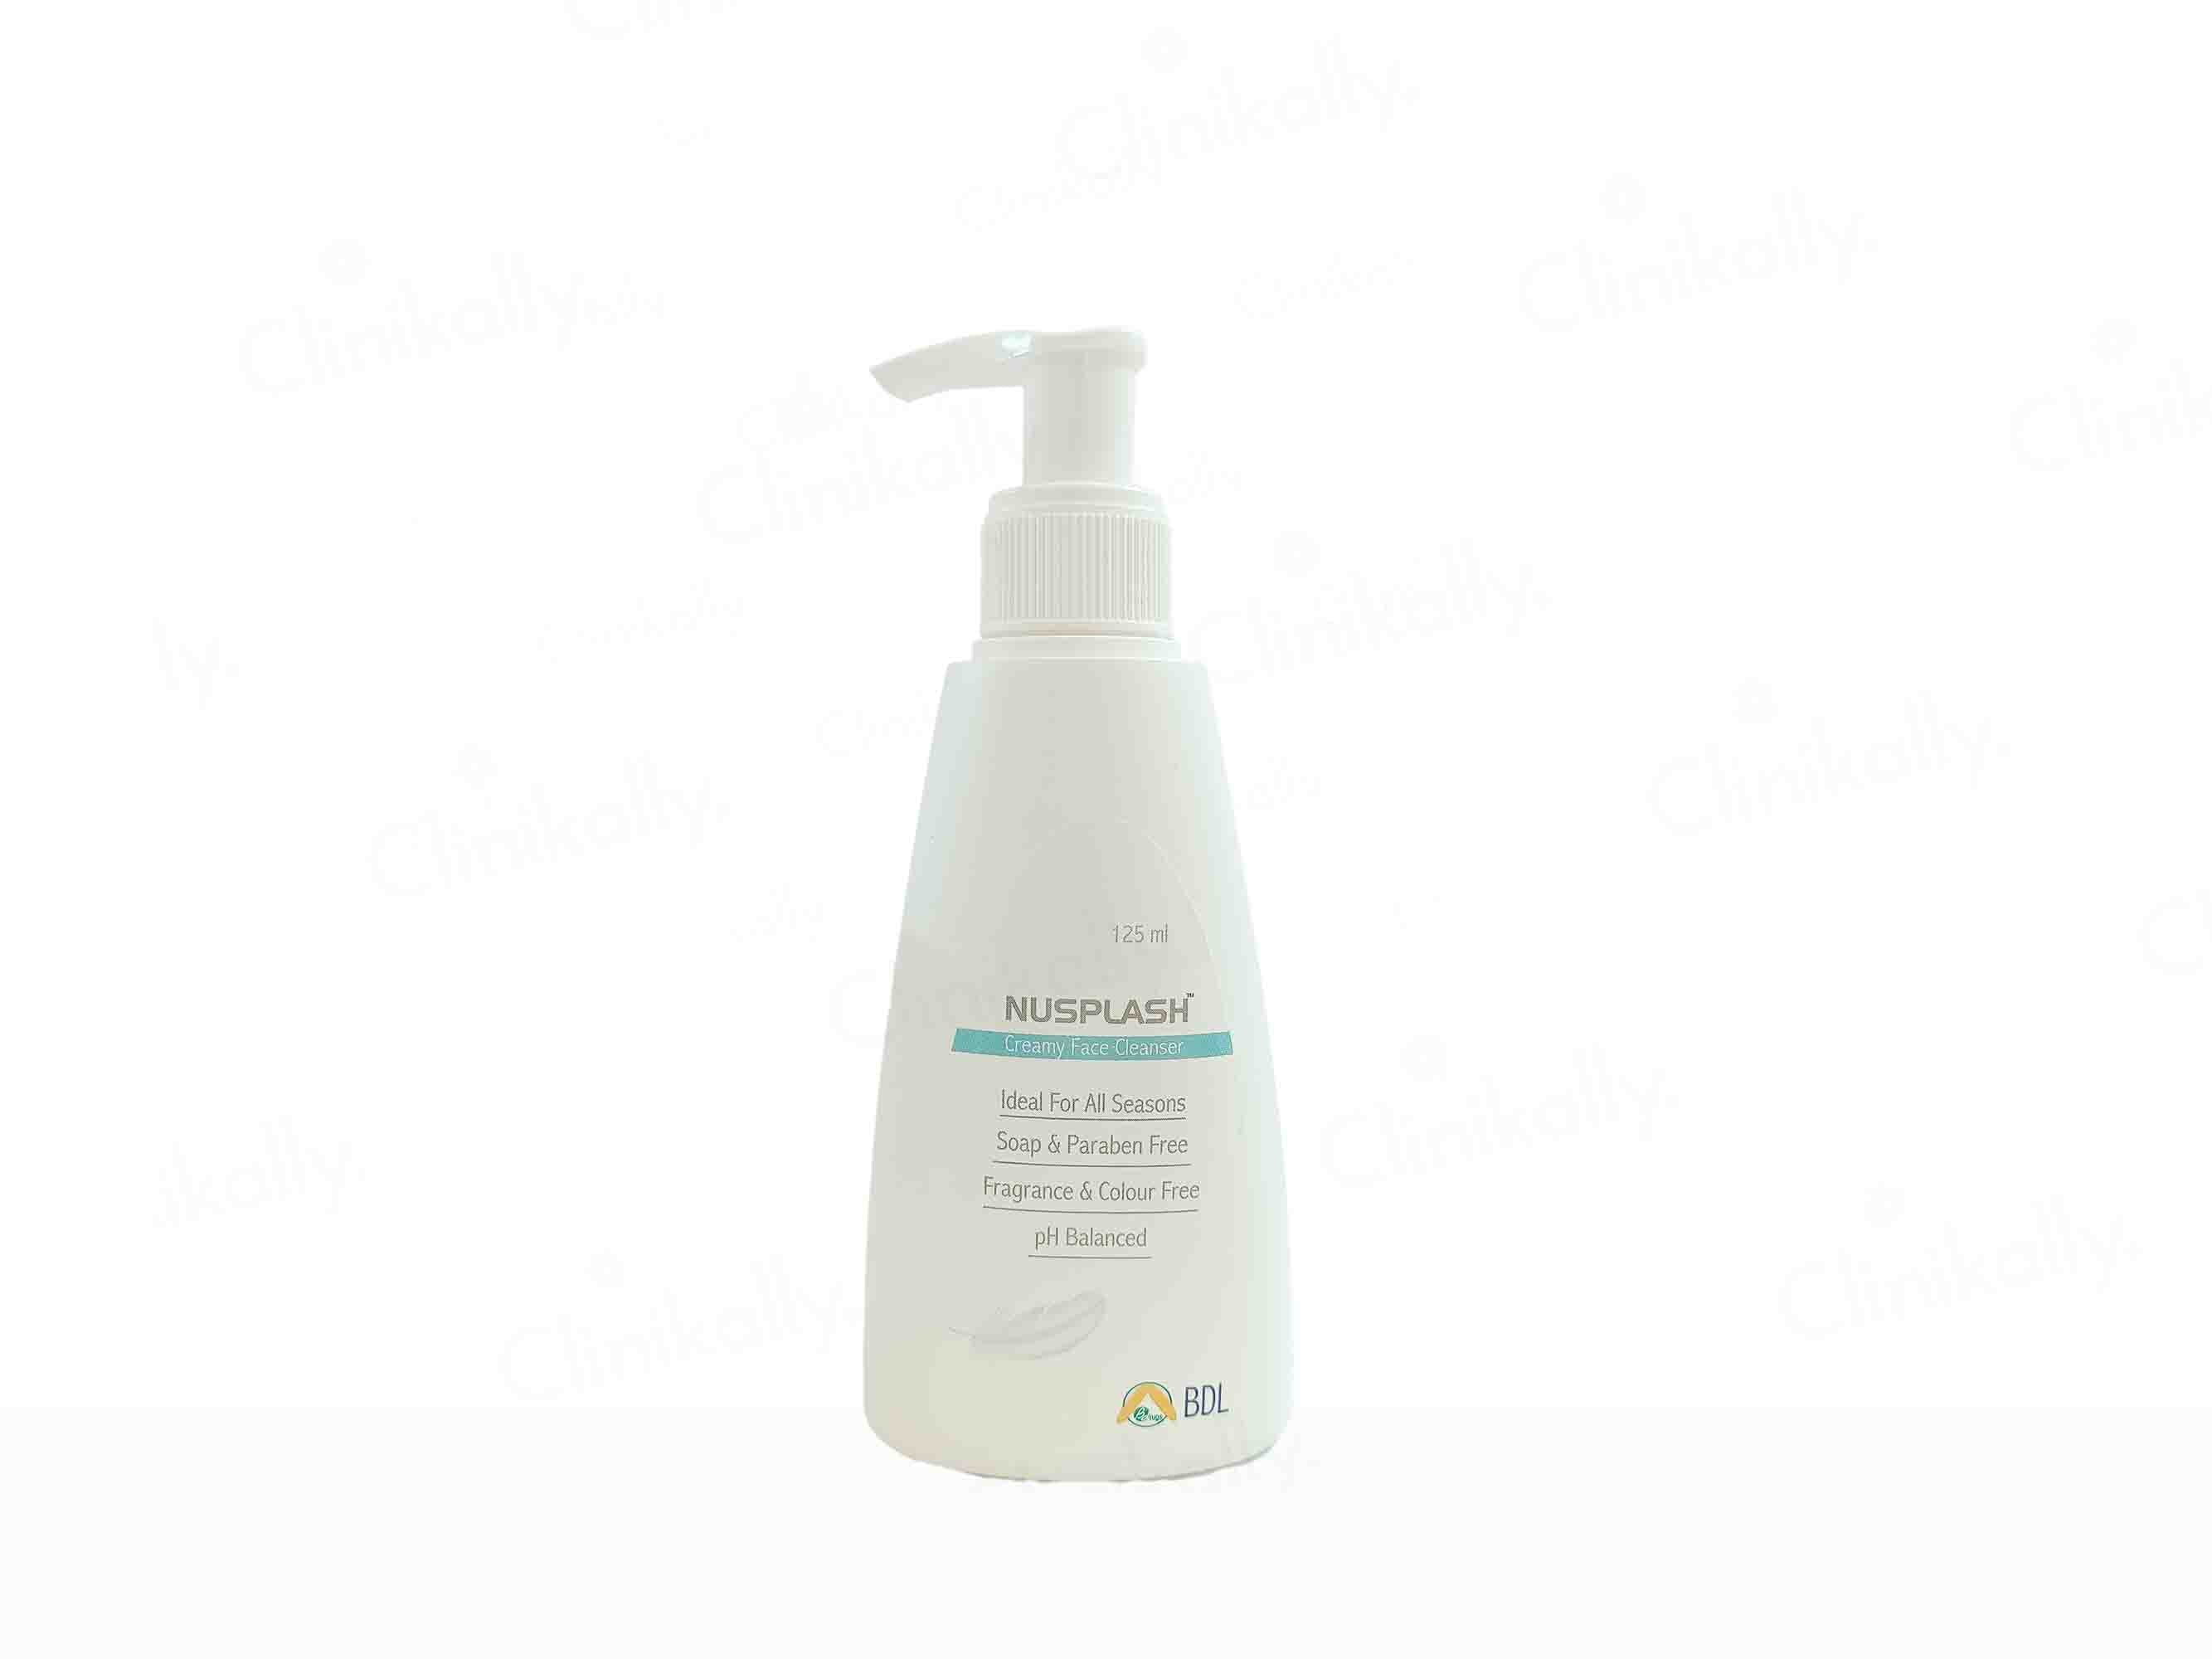 Nusplash Creamy Face Cleanser - Clinikally